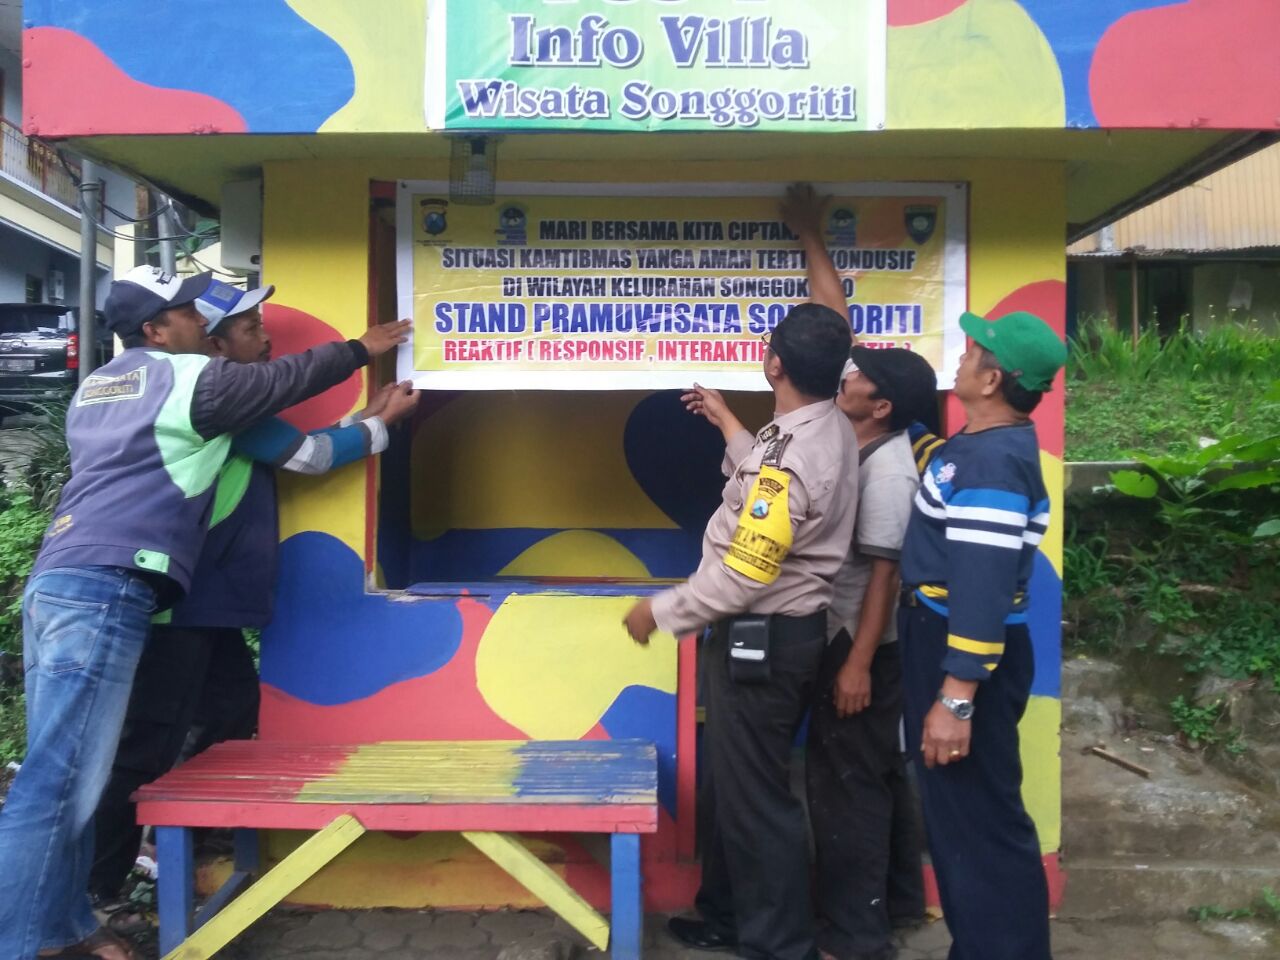 Anggota Polsek Batu Polres Batu  Ciptakan Pos Stand Ojek Pramuwisata Songgoriti Untuk Menjalin Sinergitas